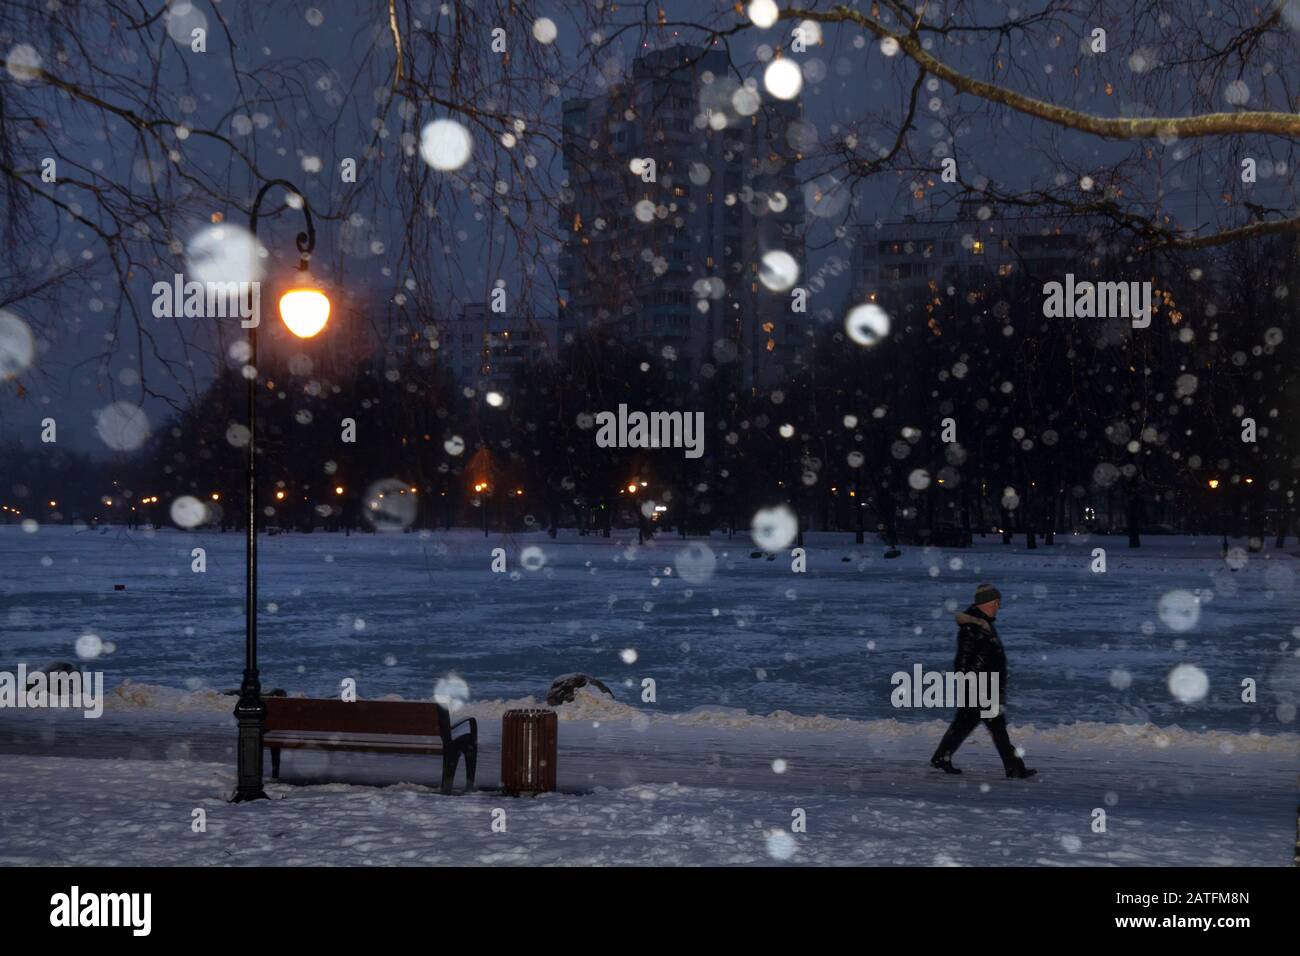 Un homme marchant dans un parc pendant une forte chute de neige en soirée dans une banlieue de la ville de Moscou, en Russie Banque D'Images